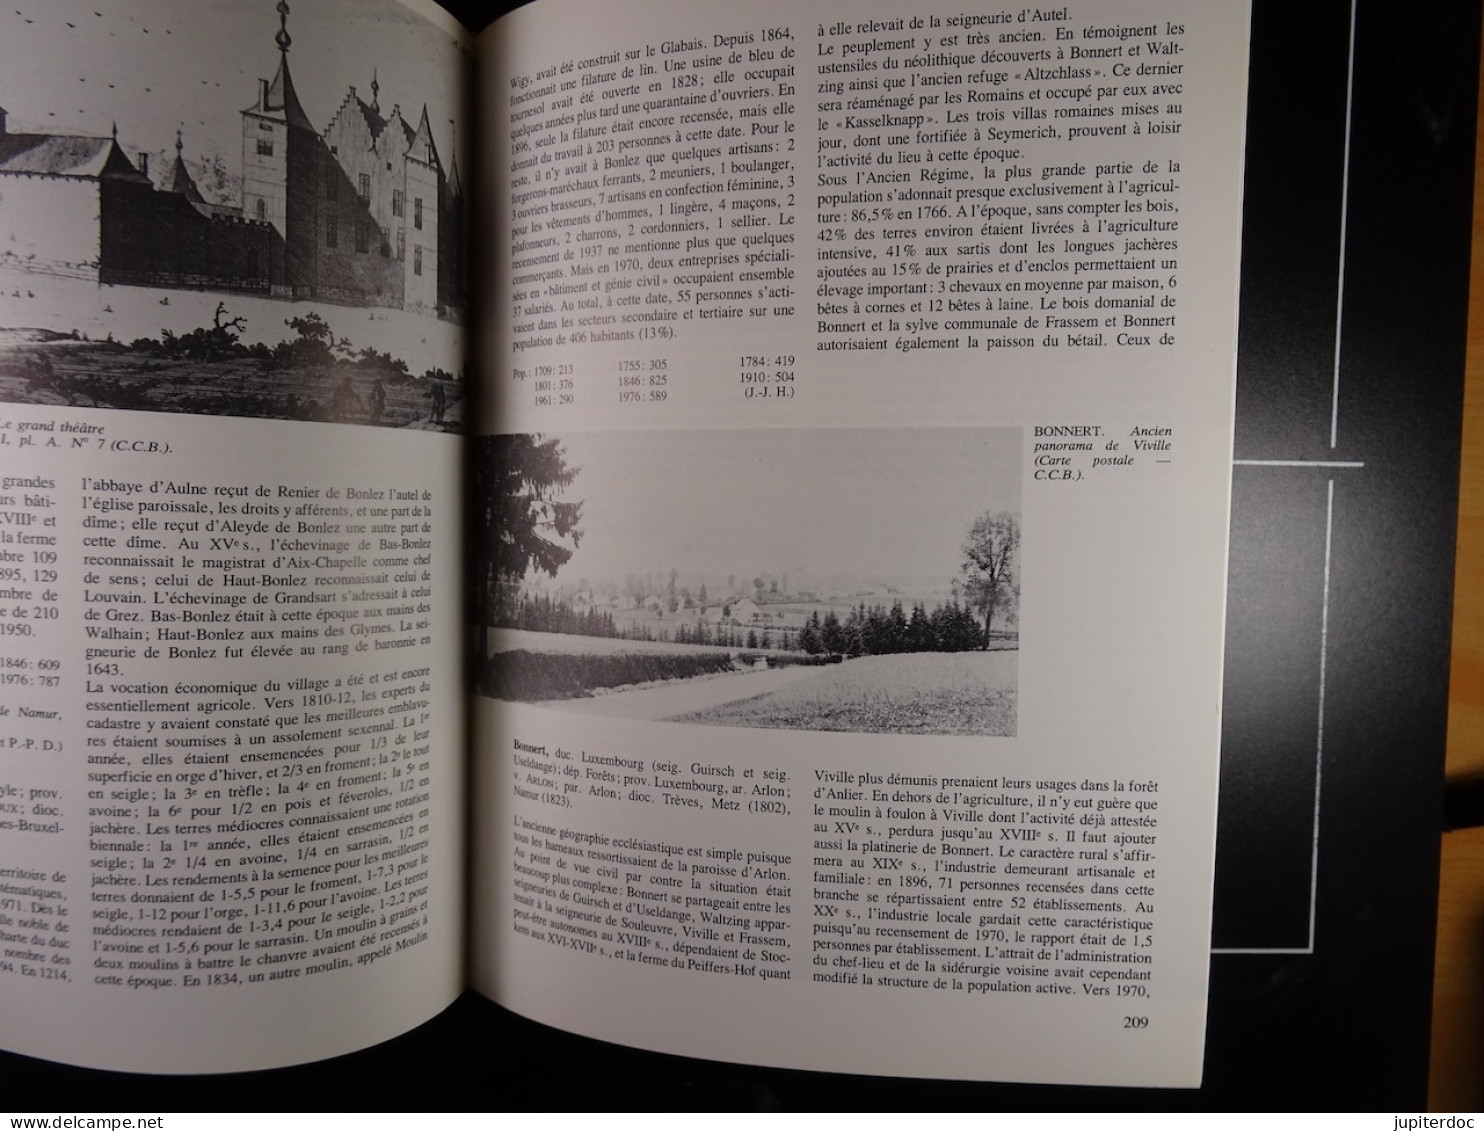 Dictionnaire des Communes de Belgique d'histoire et de géographie administrative Hasquin, Van Uyten et Duvosquel 1980